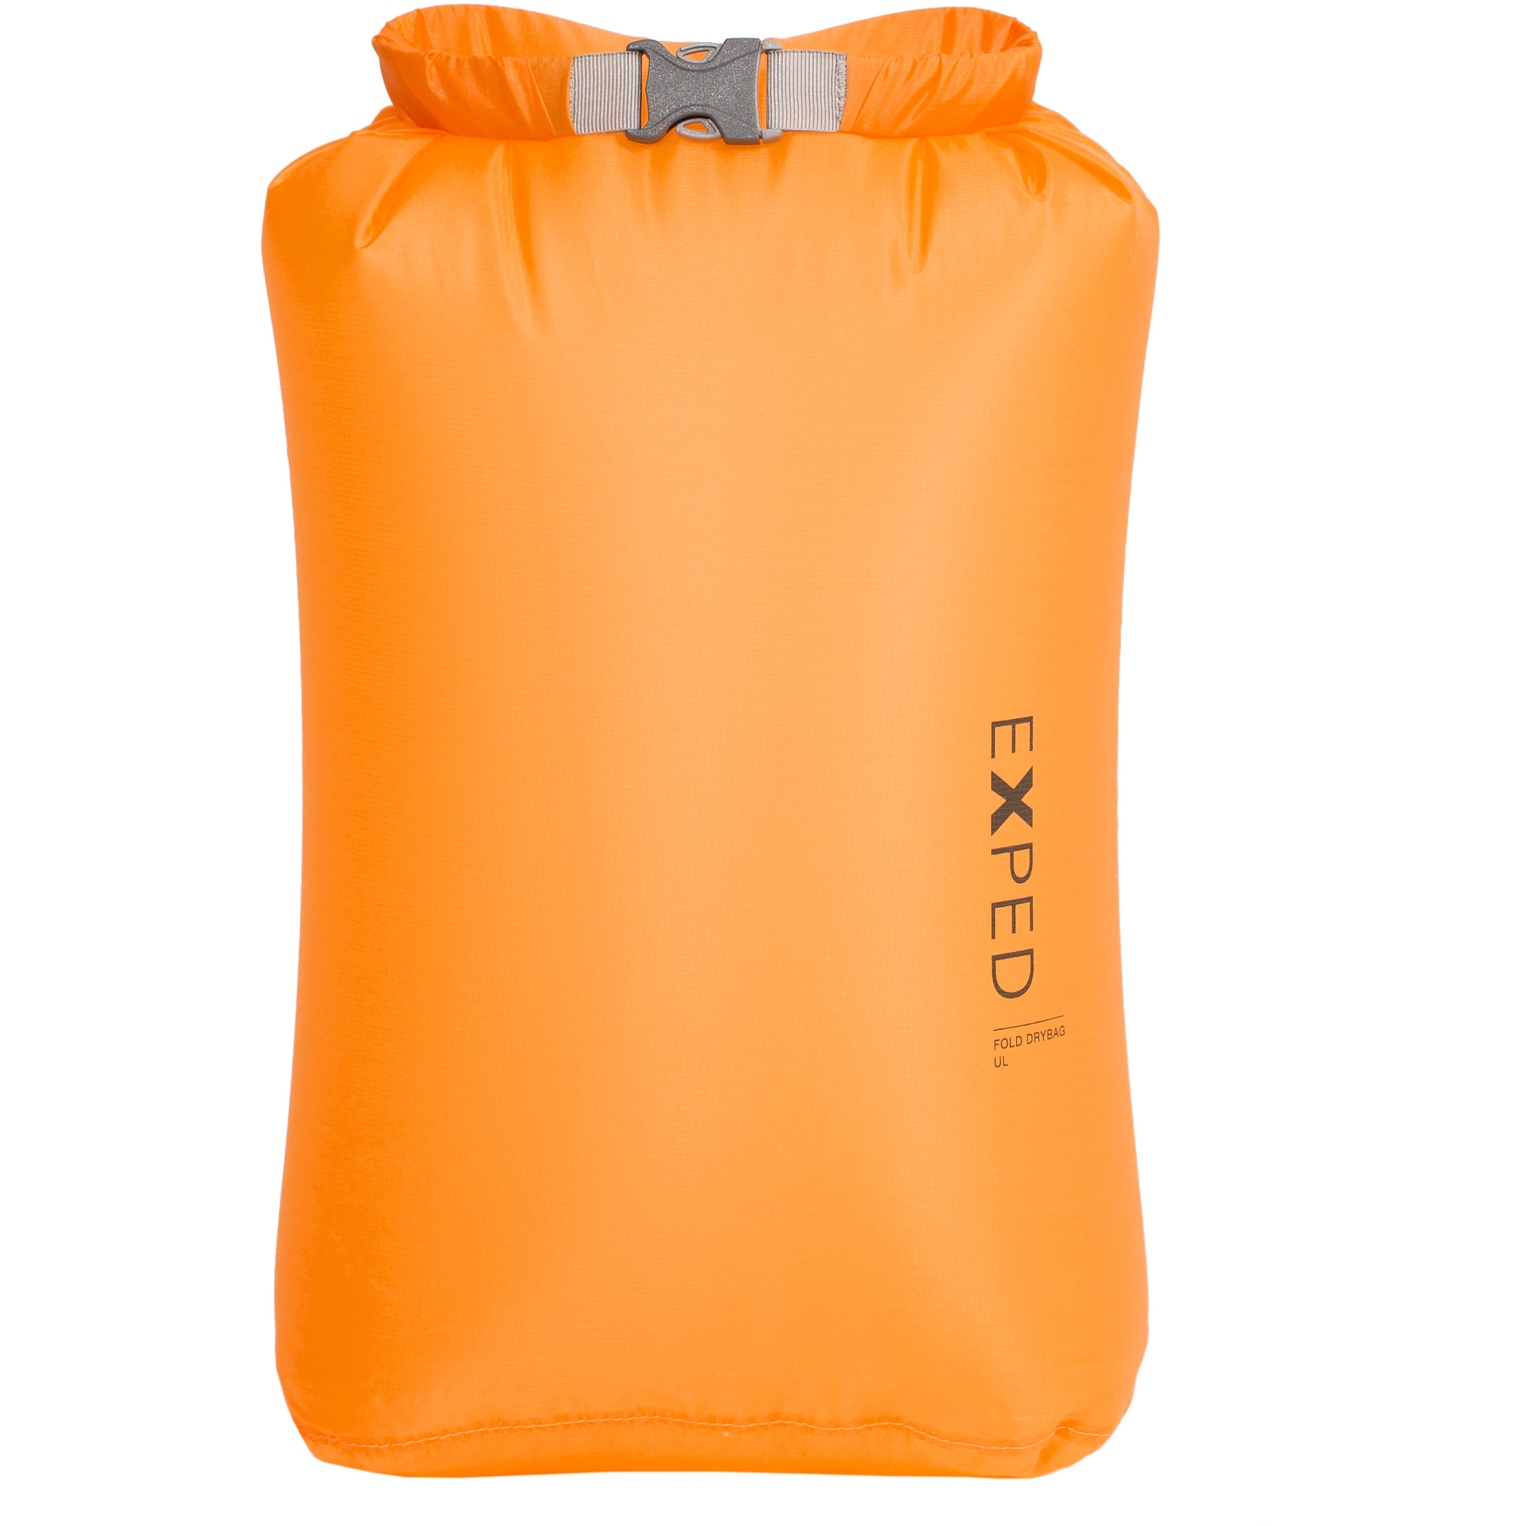 Produktbild von Exped Fold Drybag UL Packsack - S - gelb